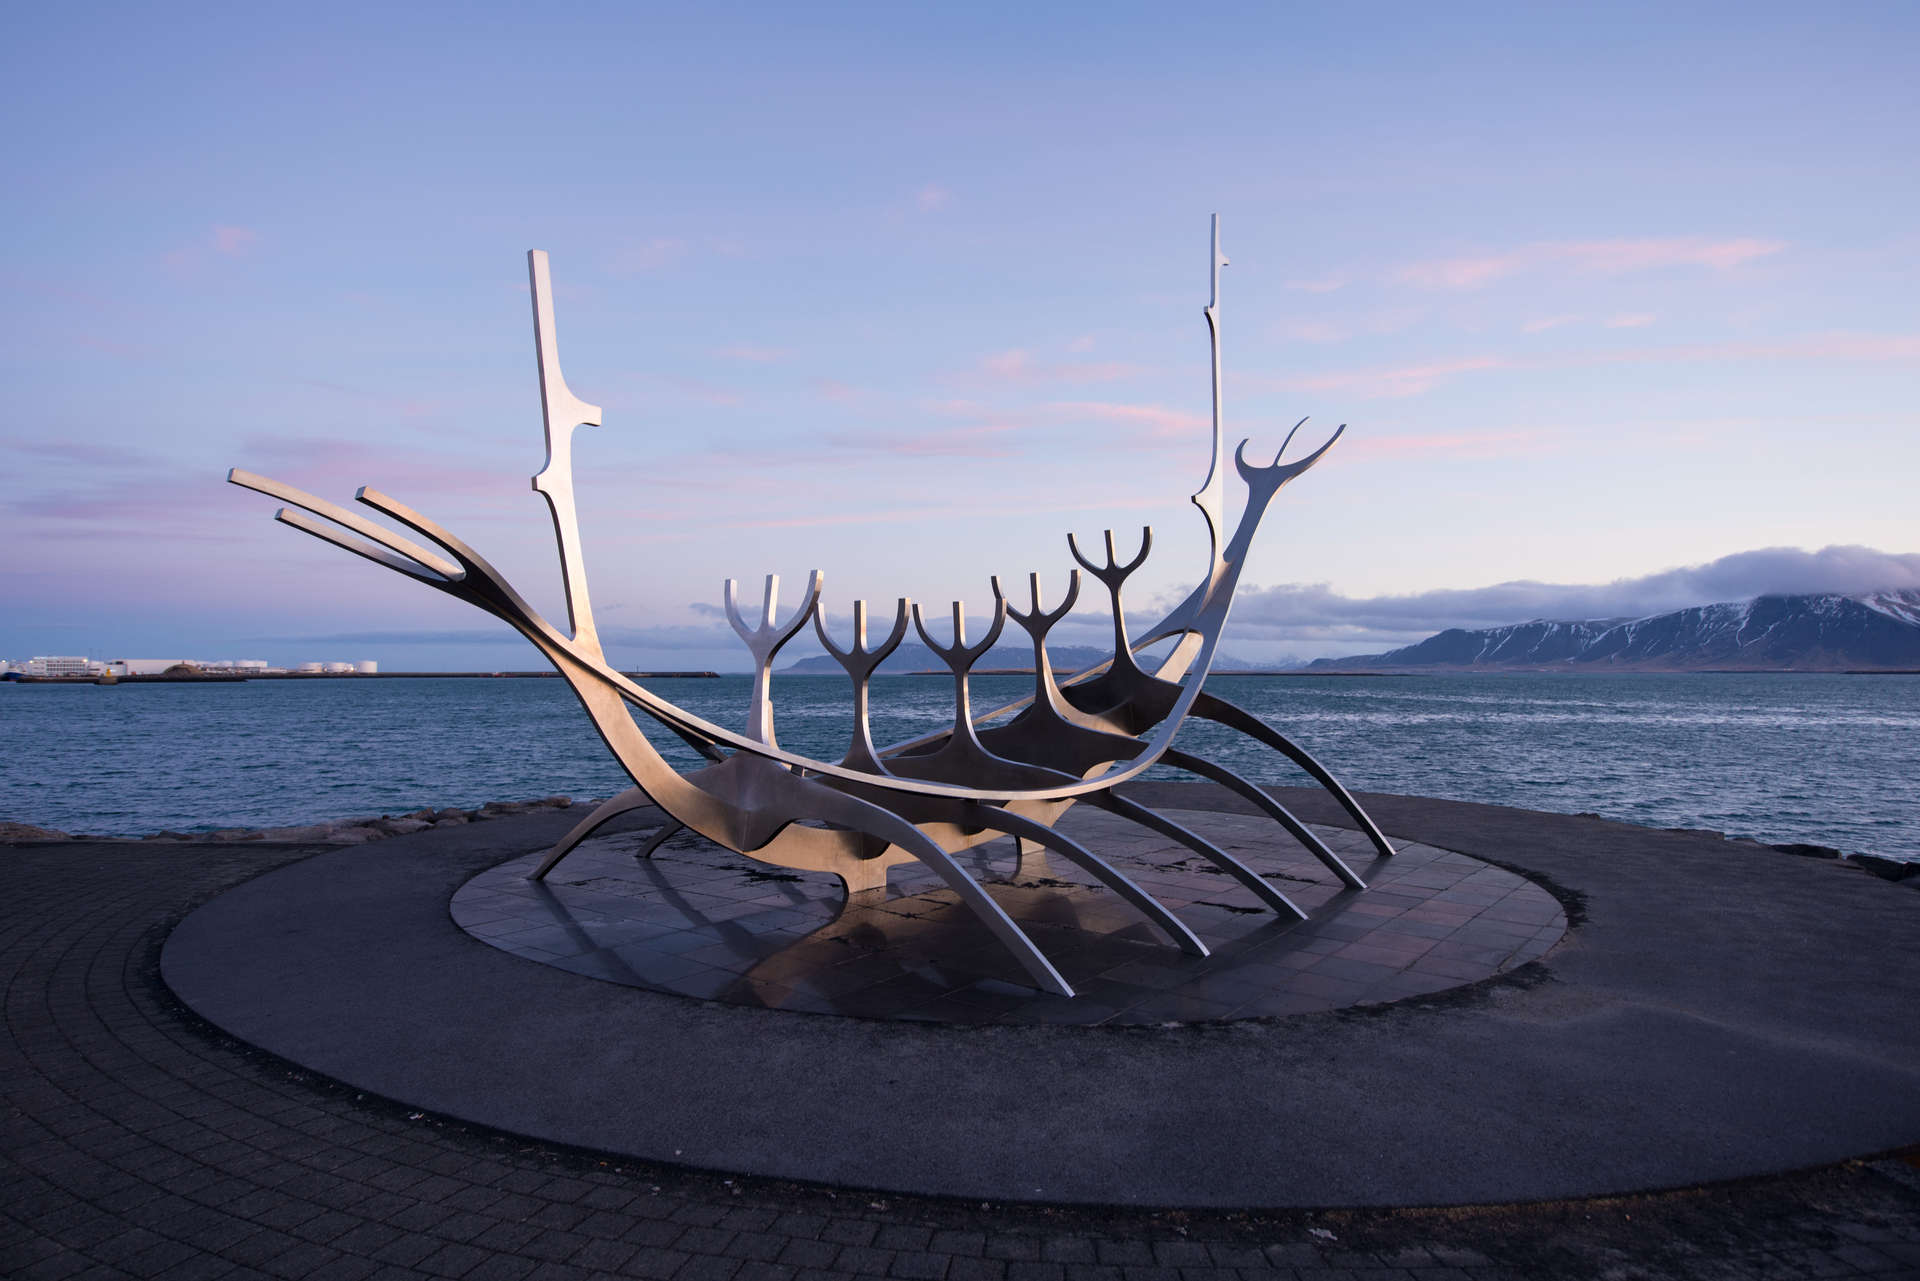 Sun Voyager Sculpture at Sunset, Reykjavik, Iceland